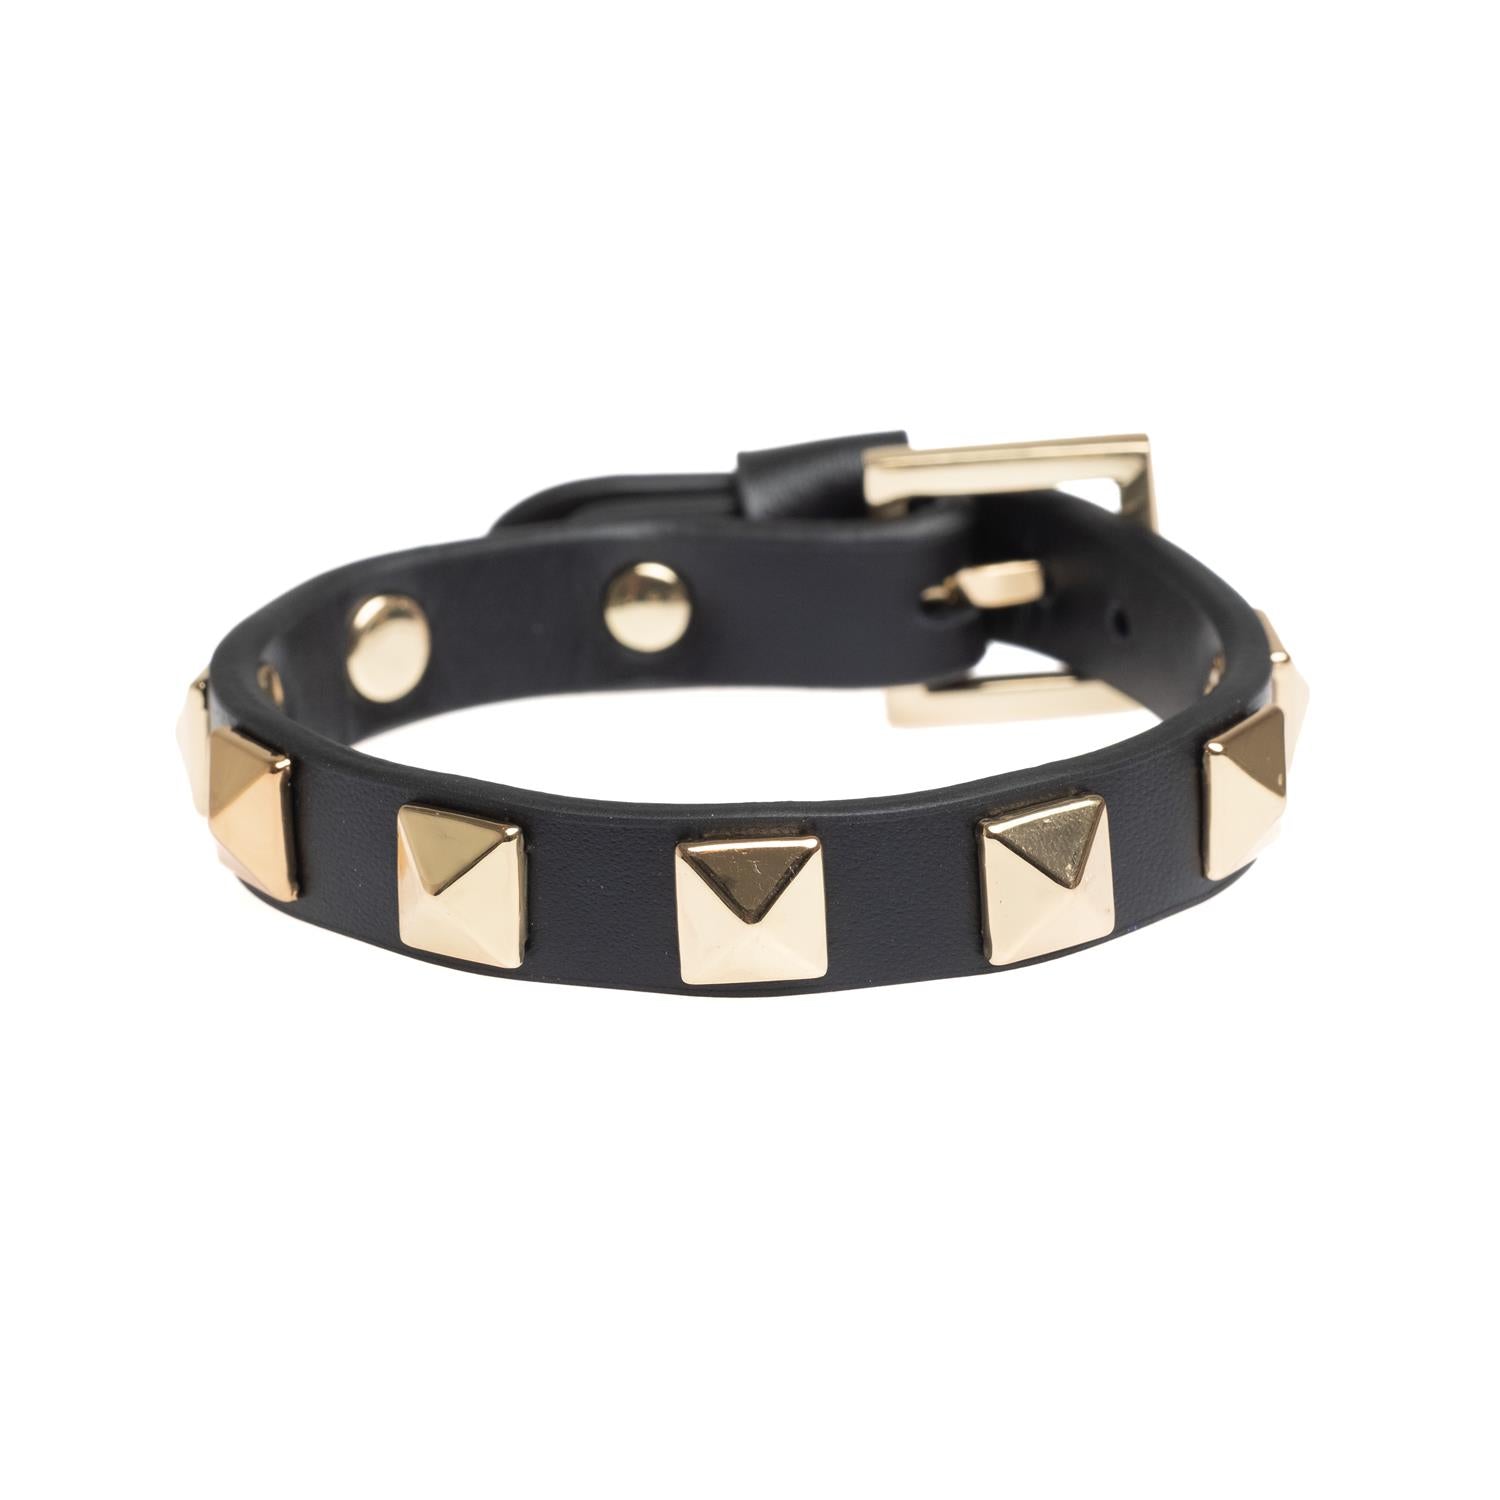 Leather Stud Bracelet Black/Gold